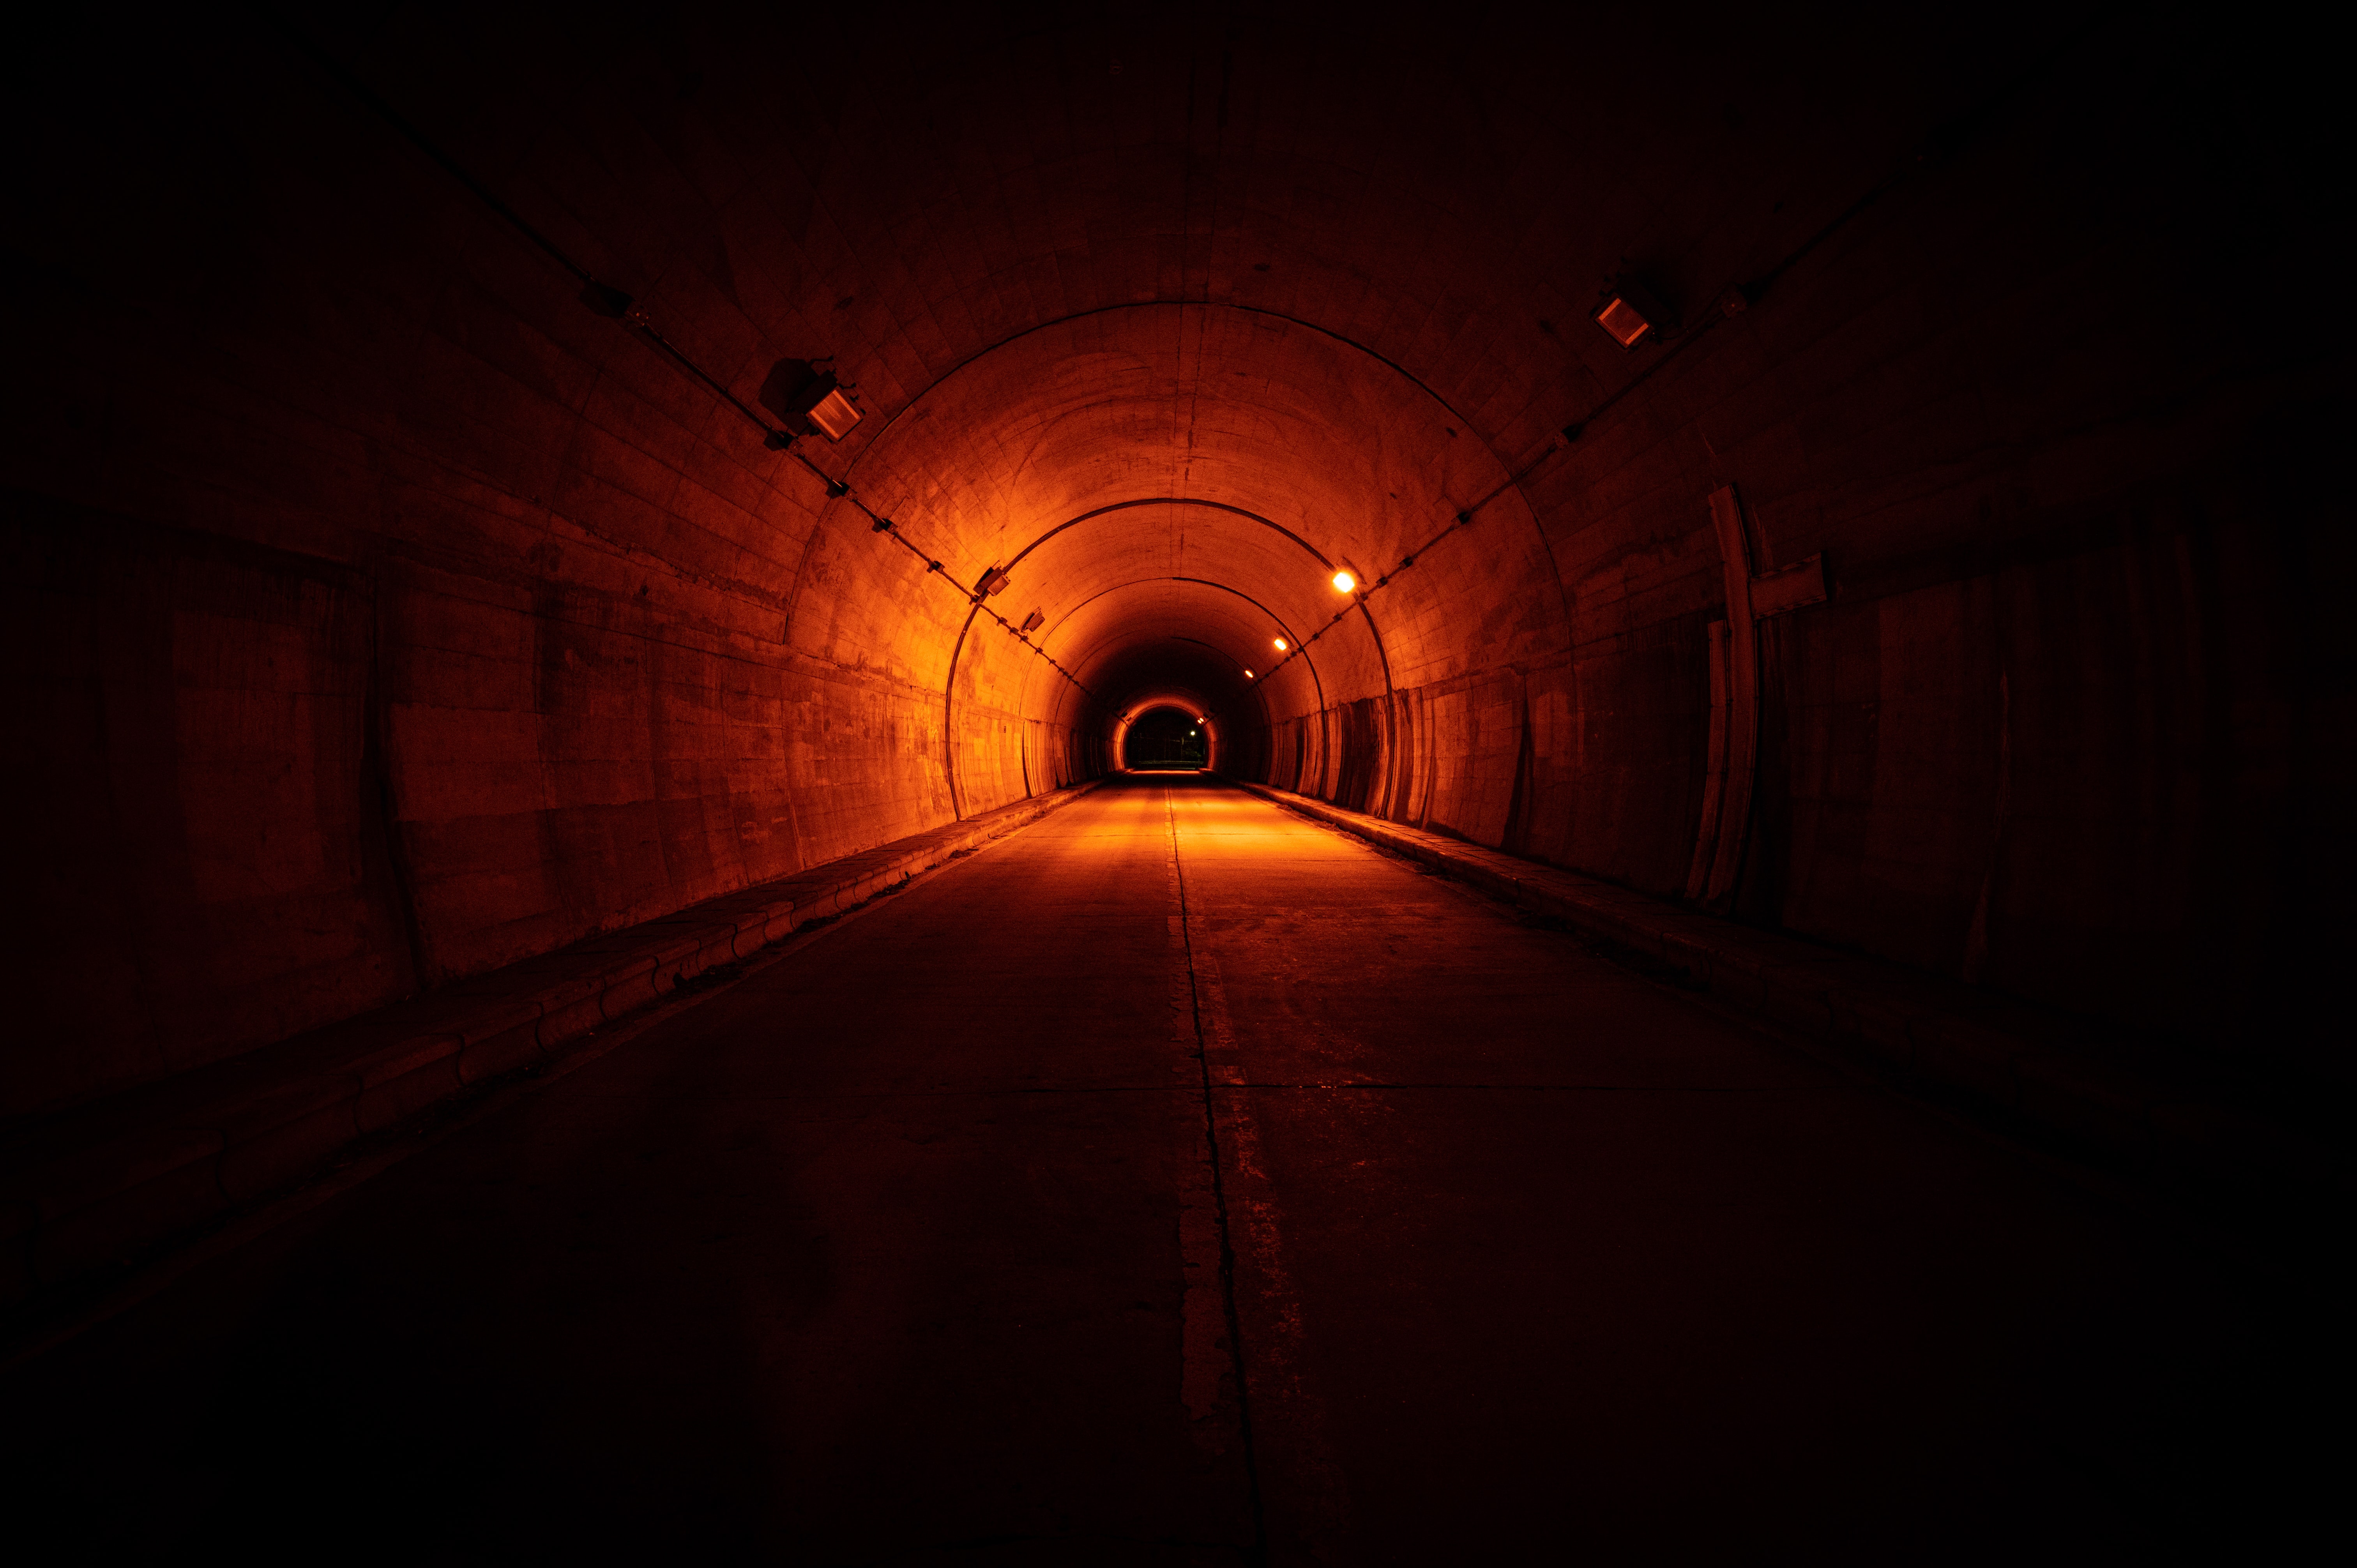 Hd 1080p Images backlight, tunnel, dark, illumination